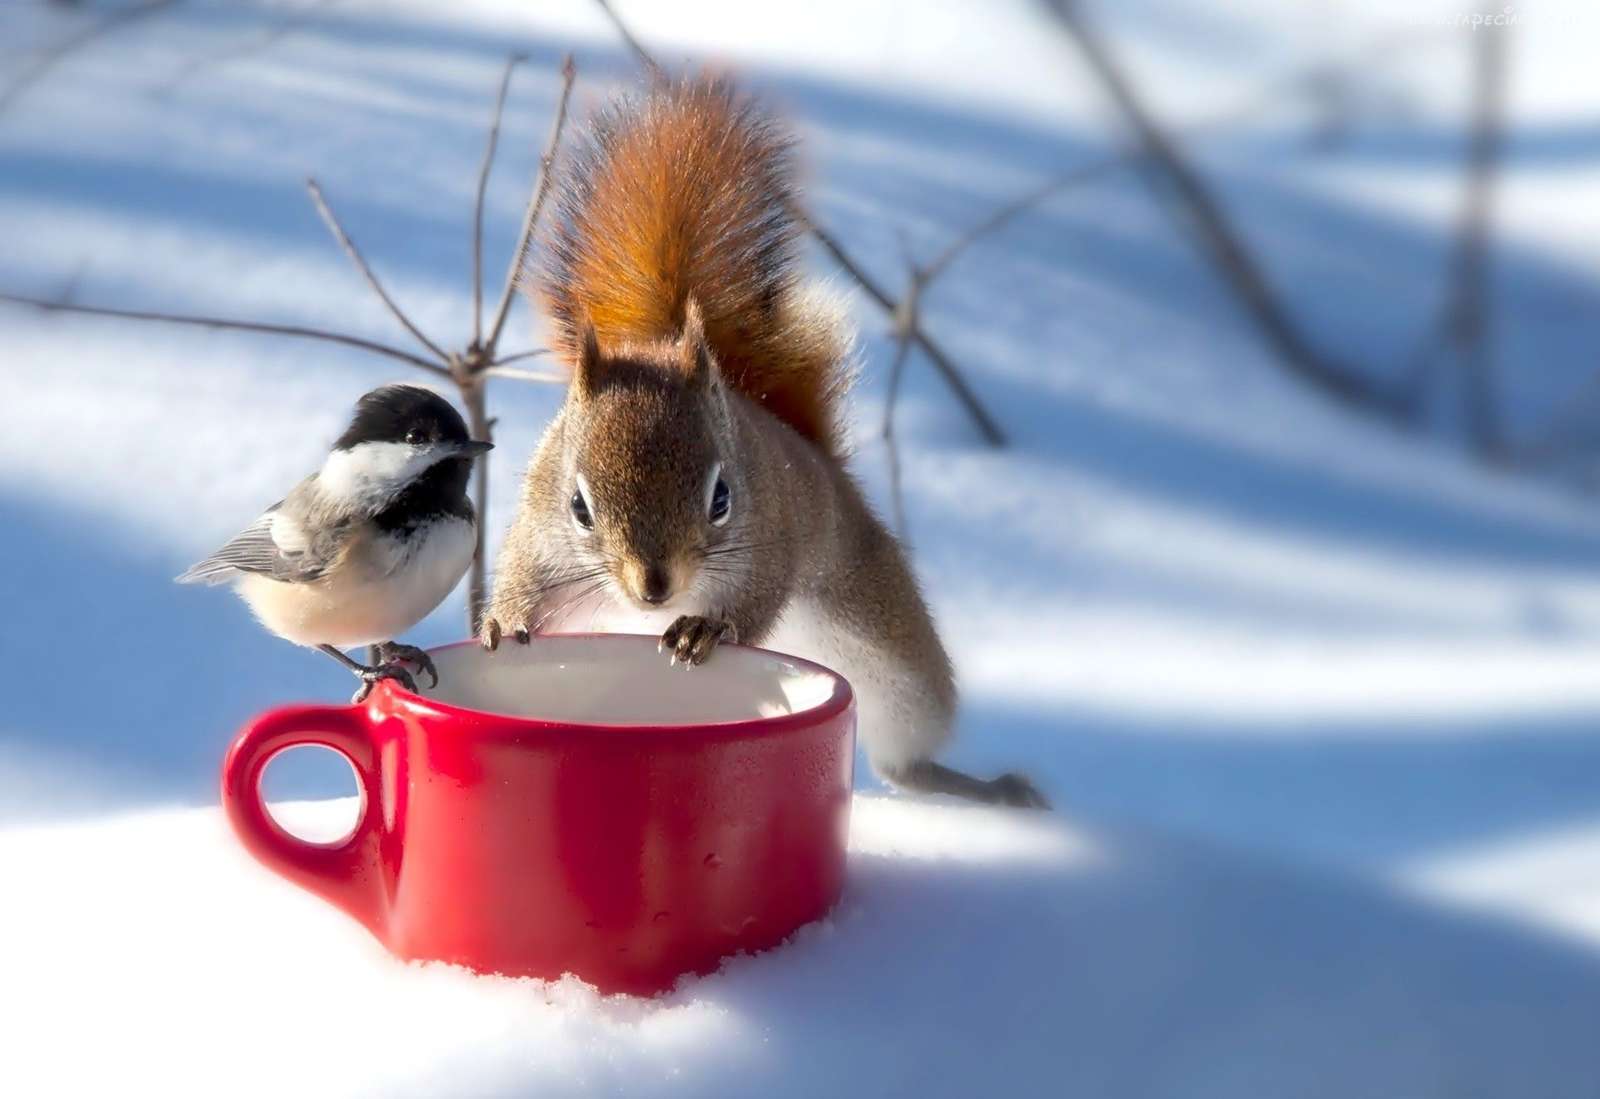 Amitié hivernale entre une mésange et un écureuil puzzle en ligne